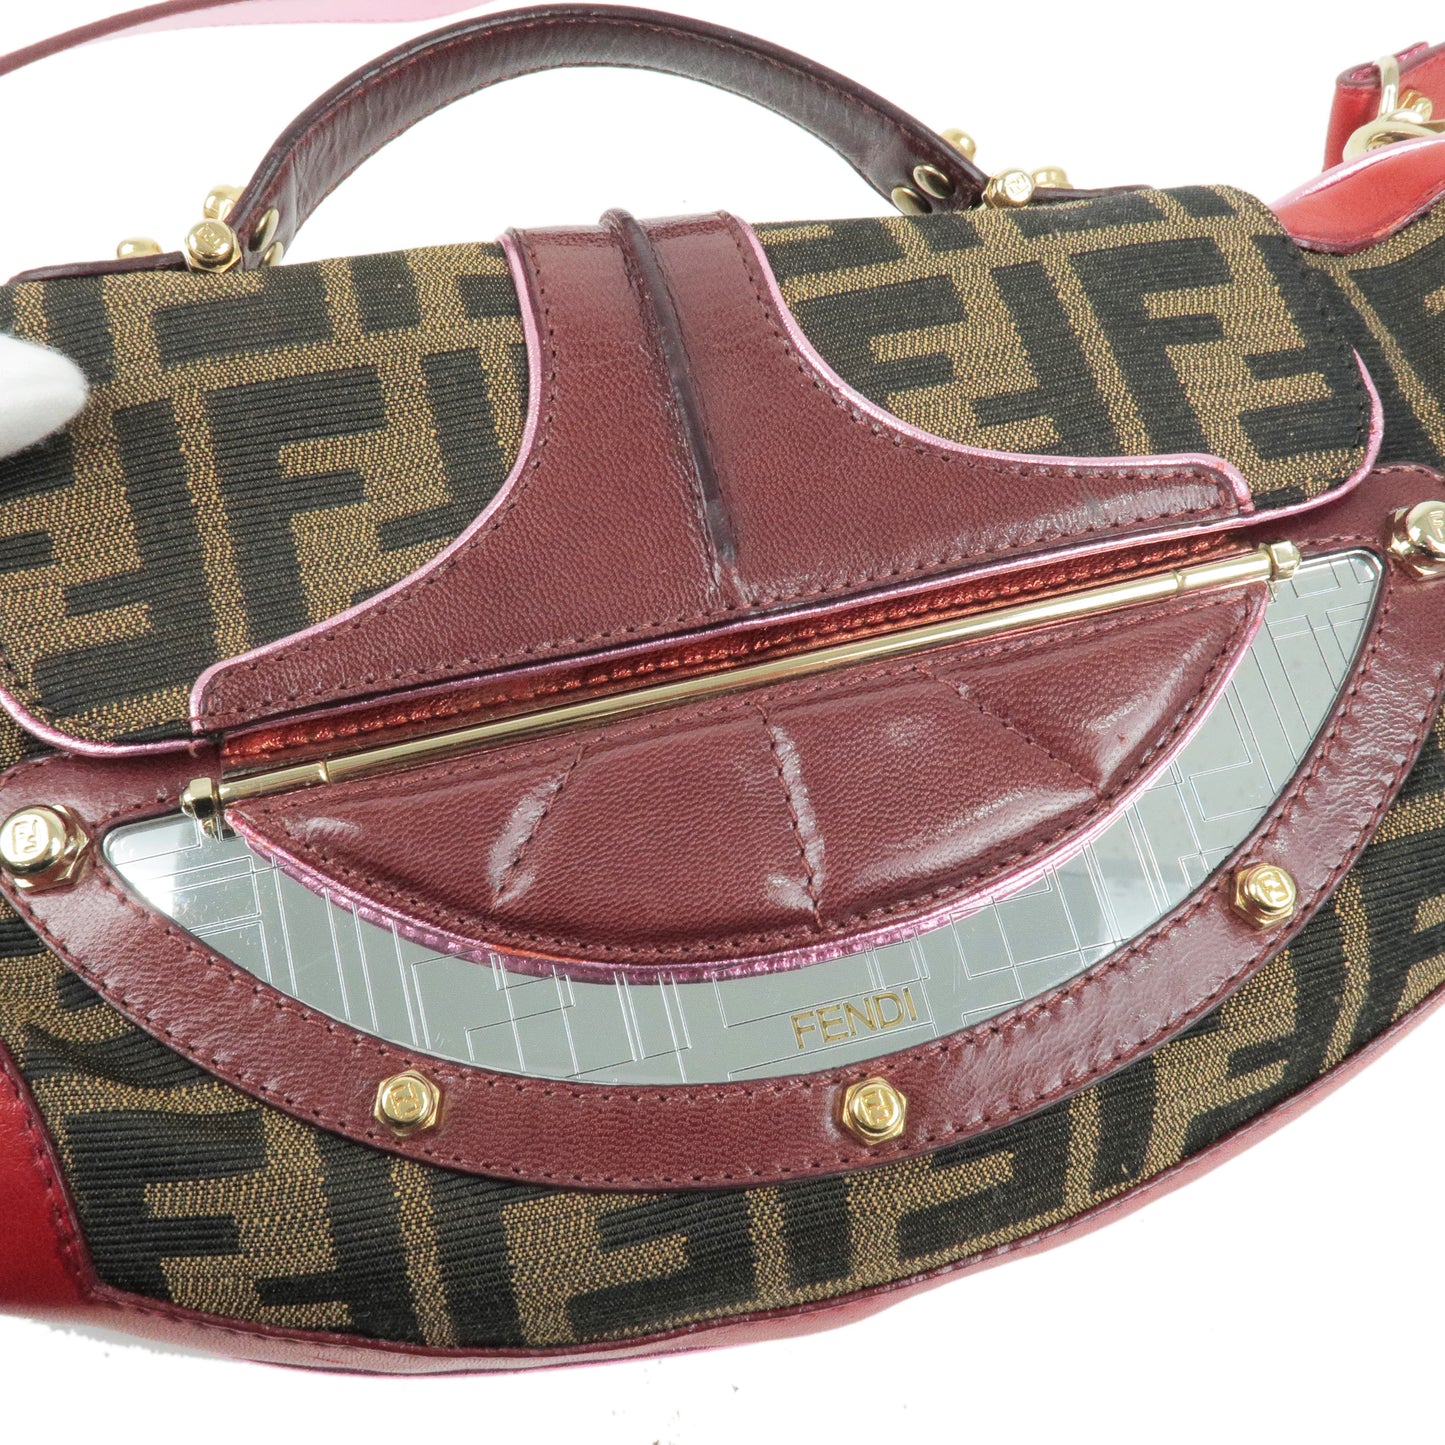 FENDI Zucca Canvas Leather 2Way Bag HandBag Beige Brown Red 8BN133